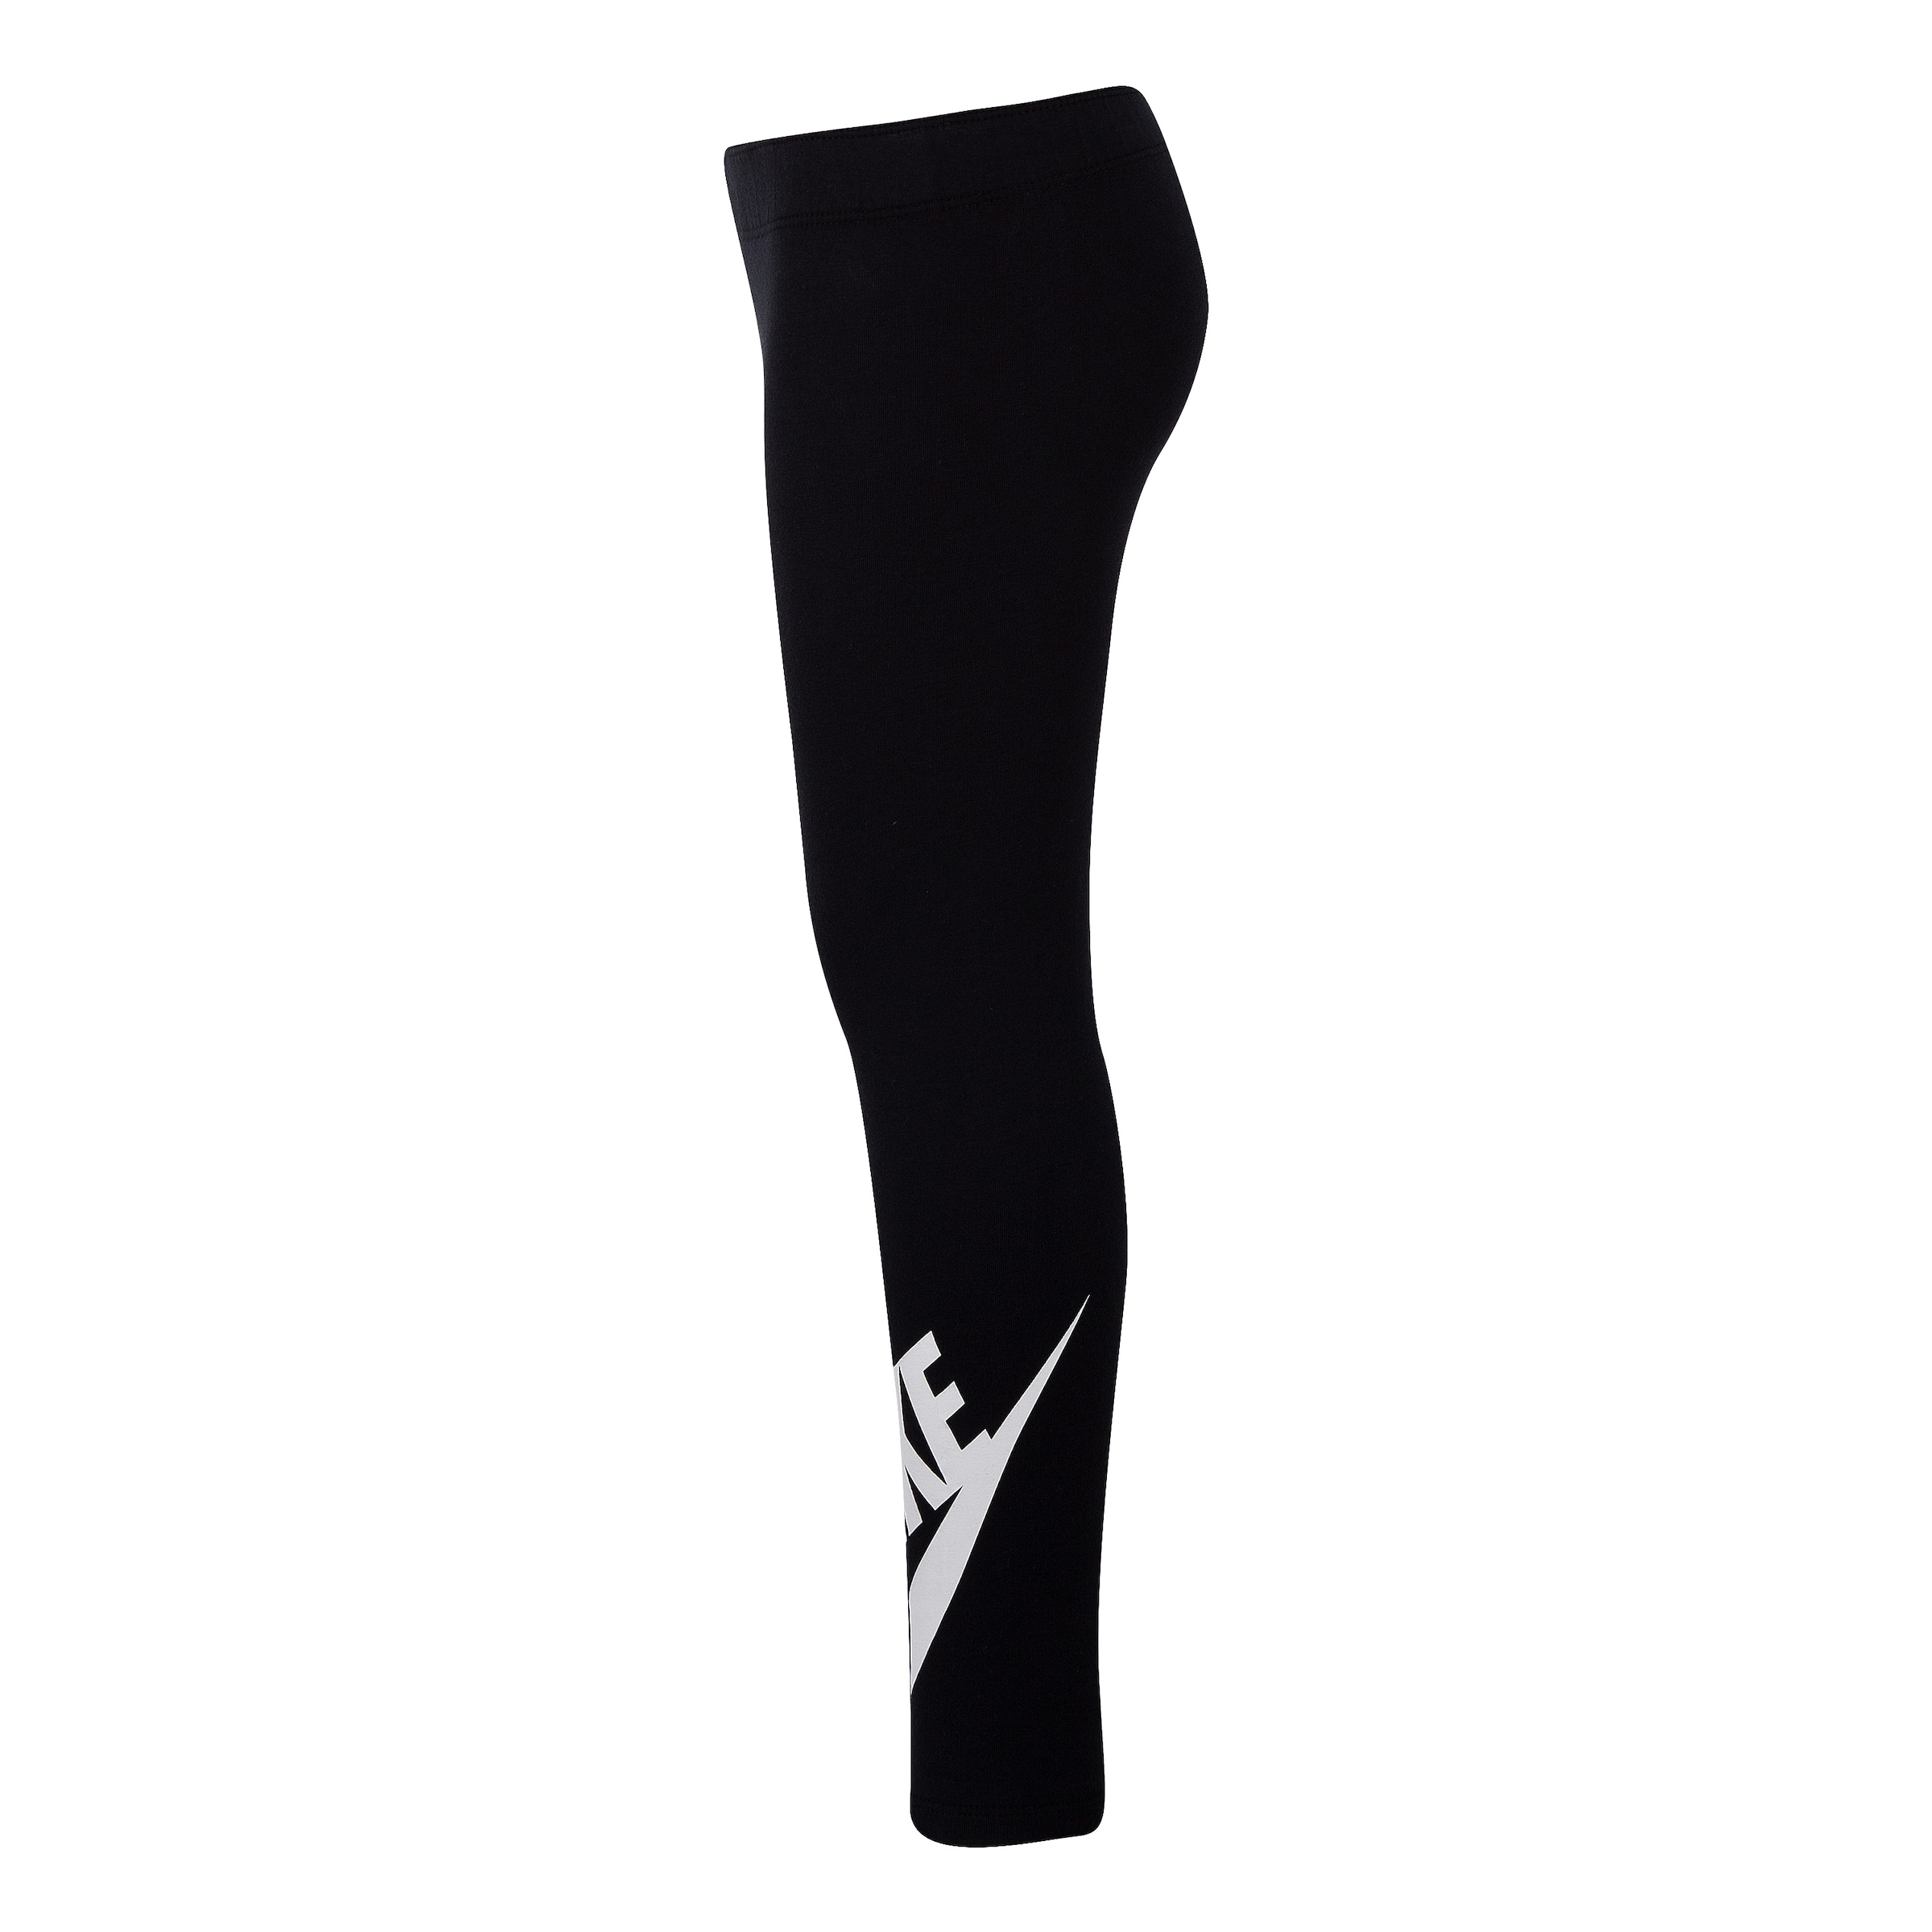 Nike Sportswear G NSW bei Kinder« OTTO bestellen SEE - LEGGING für A Leggings LEG »NKG